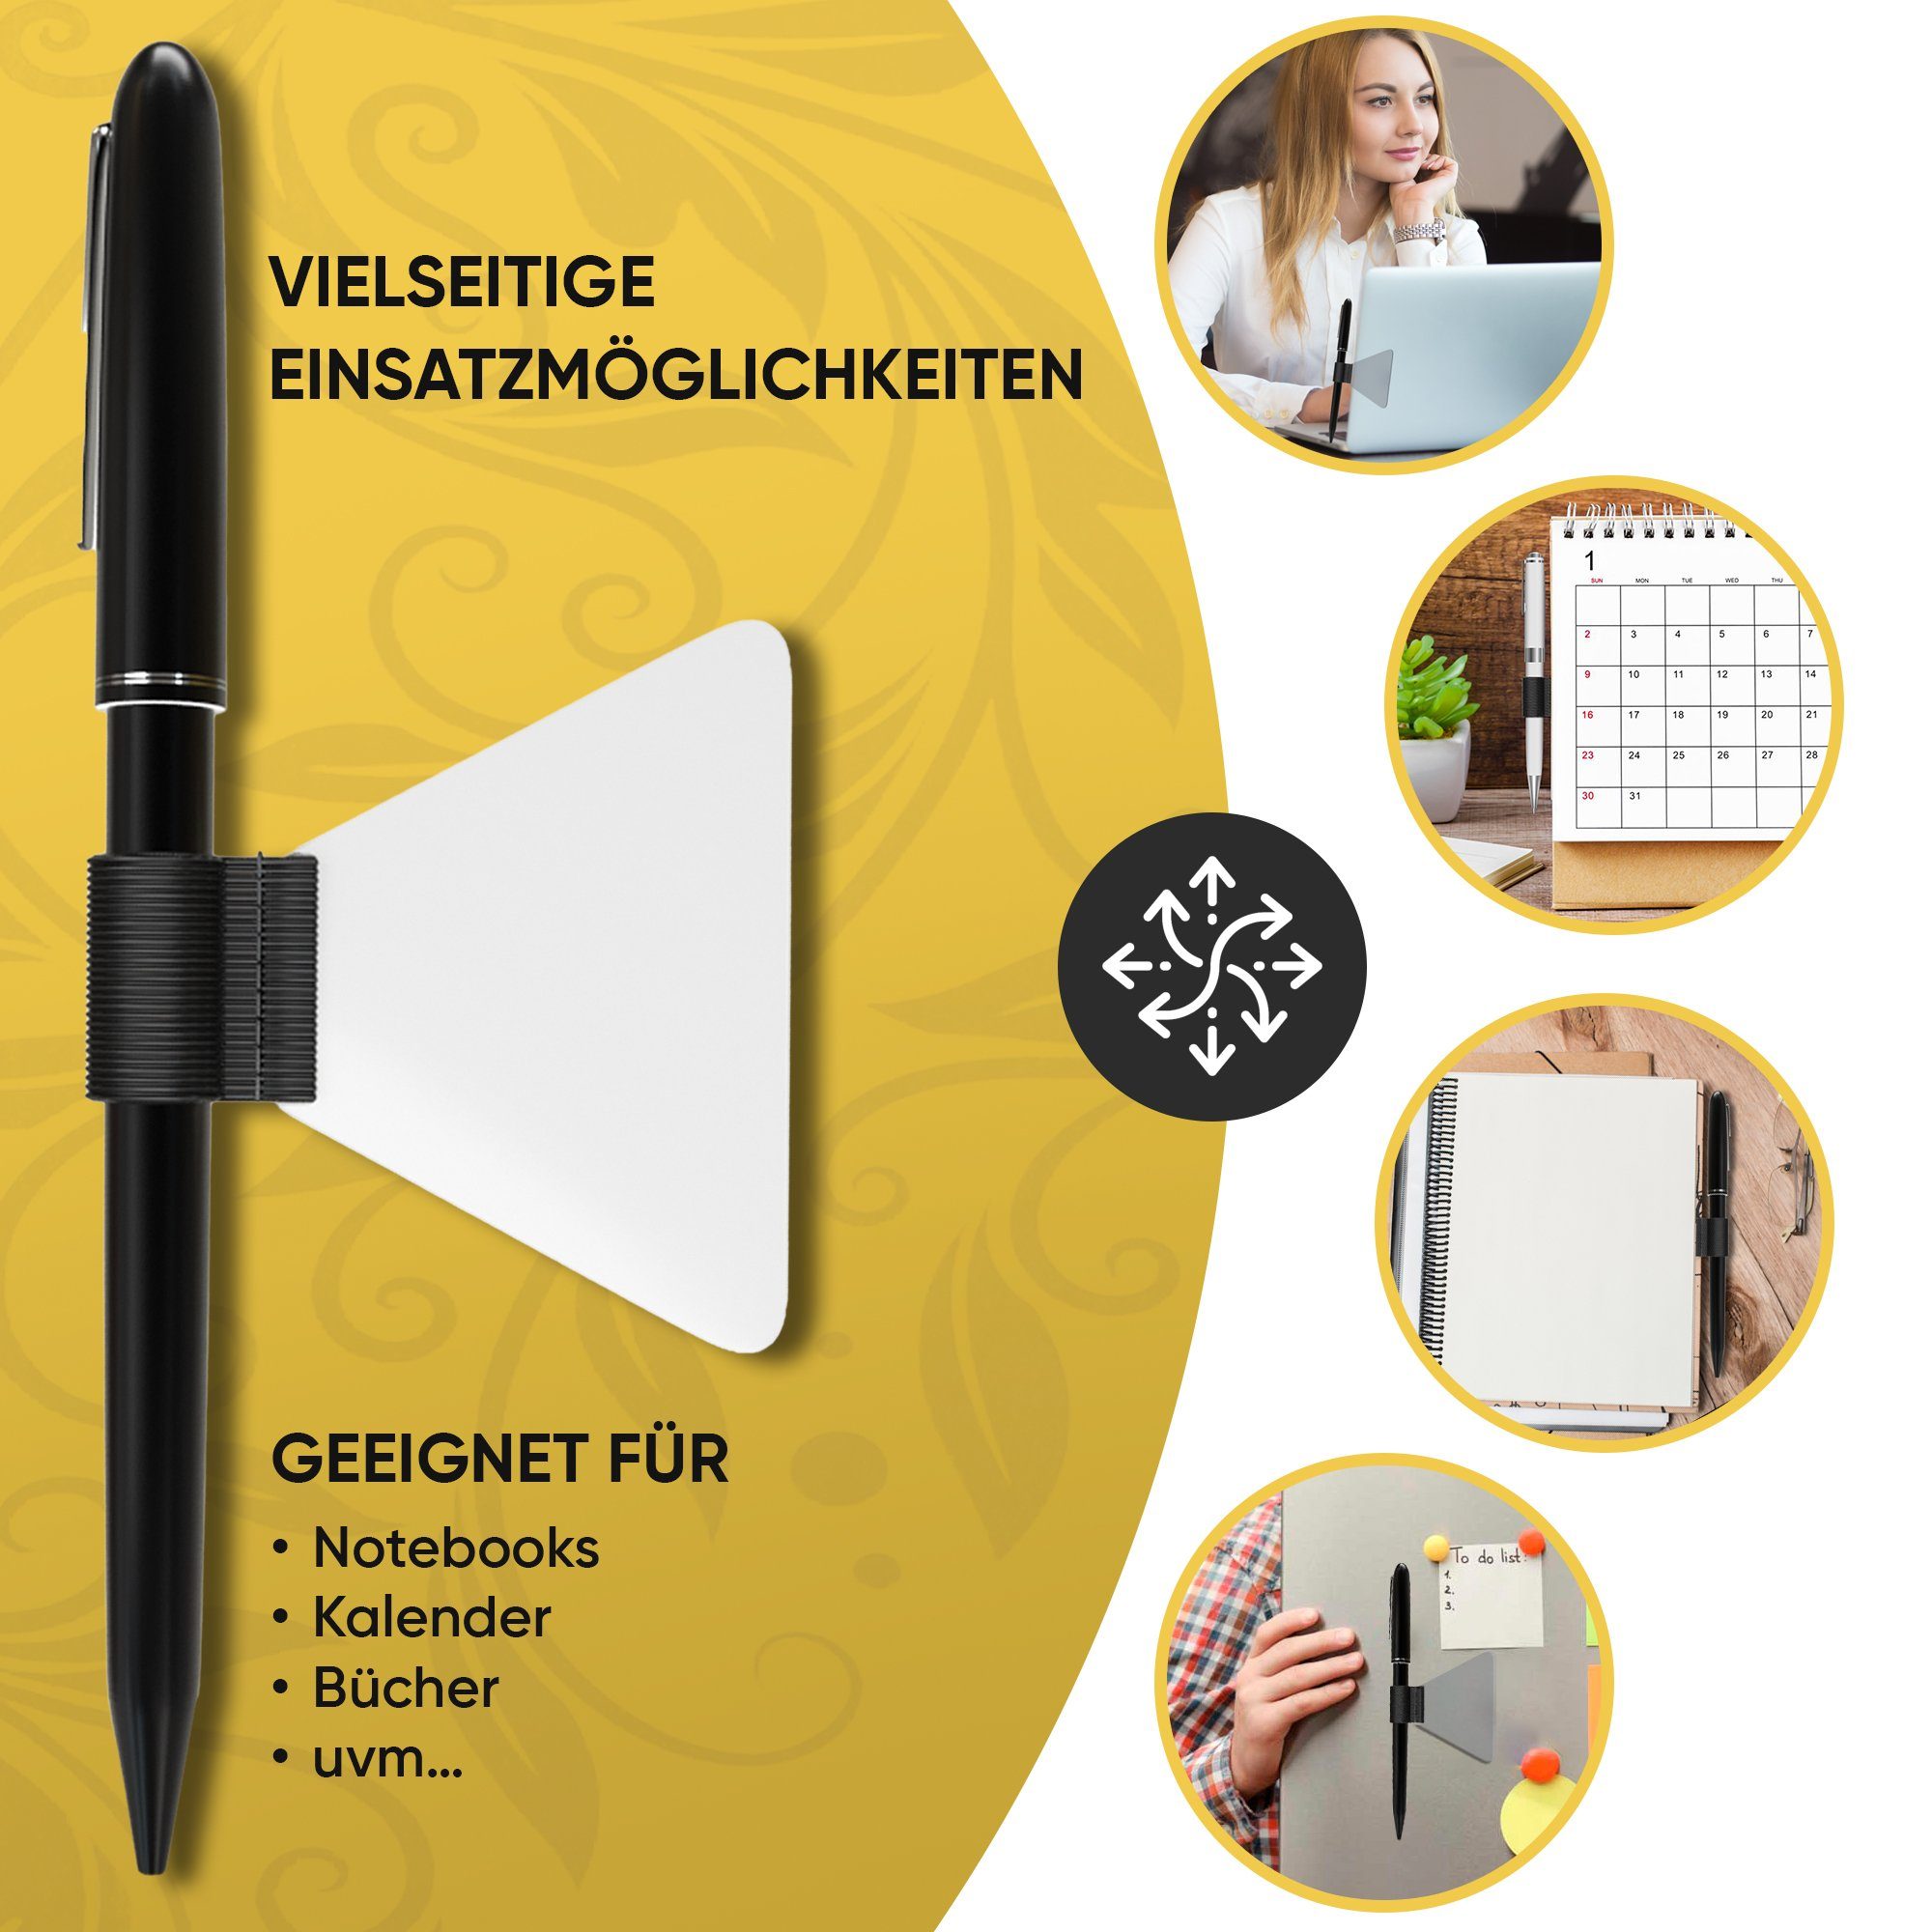 LifeDesign Notizbuch Stiftehalter, Pen-Loop 3er Set, selbstklebend & für Stiftarten alle Bücher Stifthalter